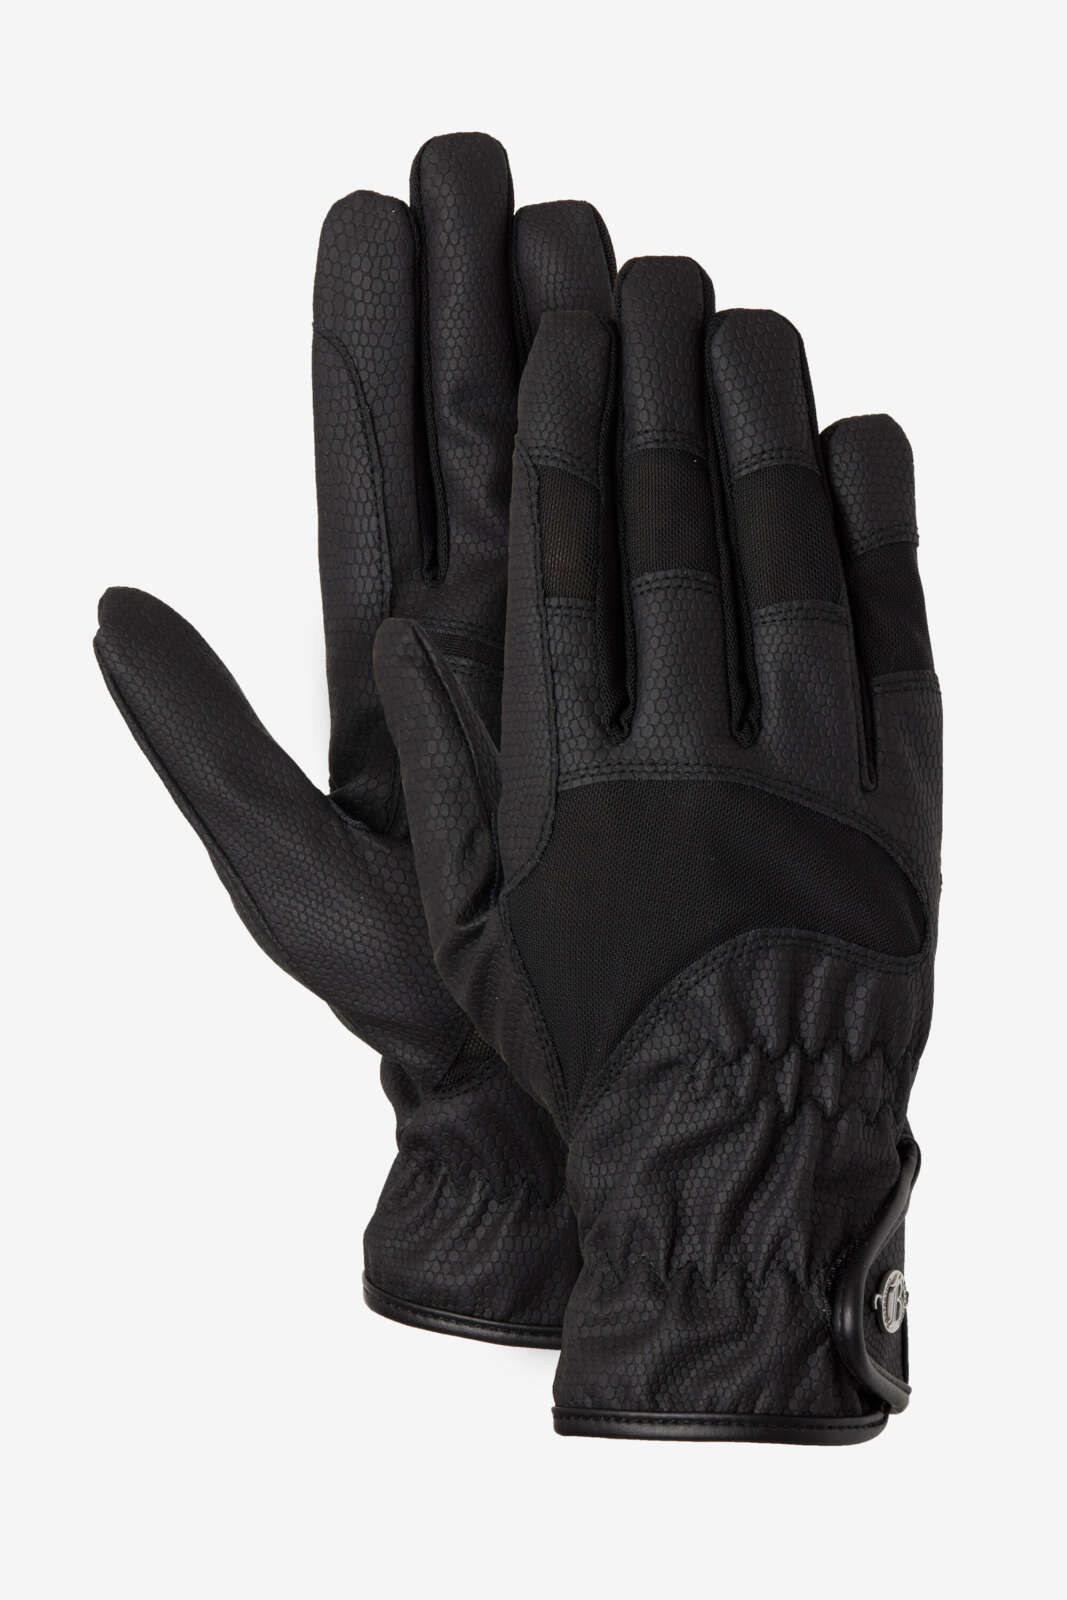 B Vertigo Flex Riding Gloves-Black